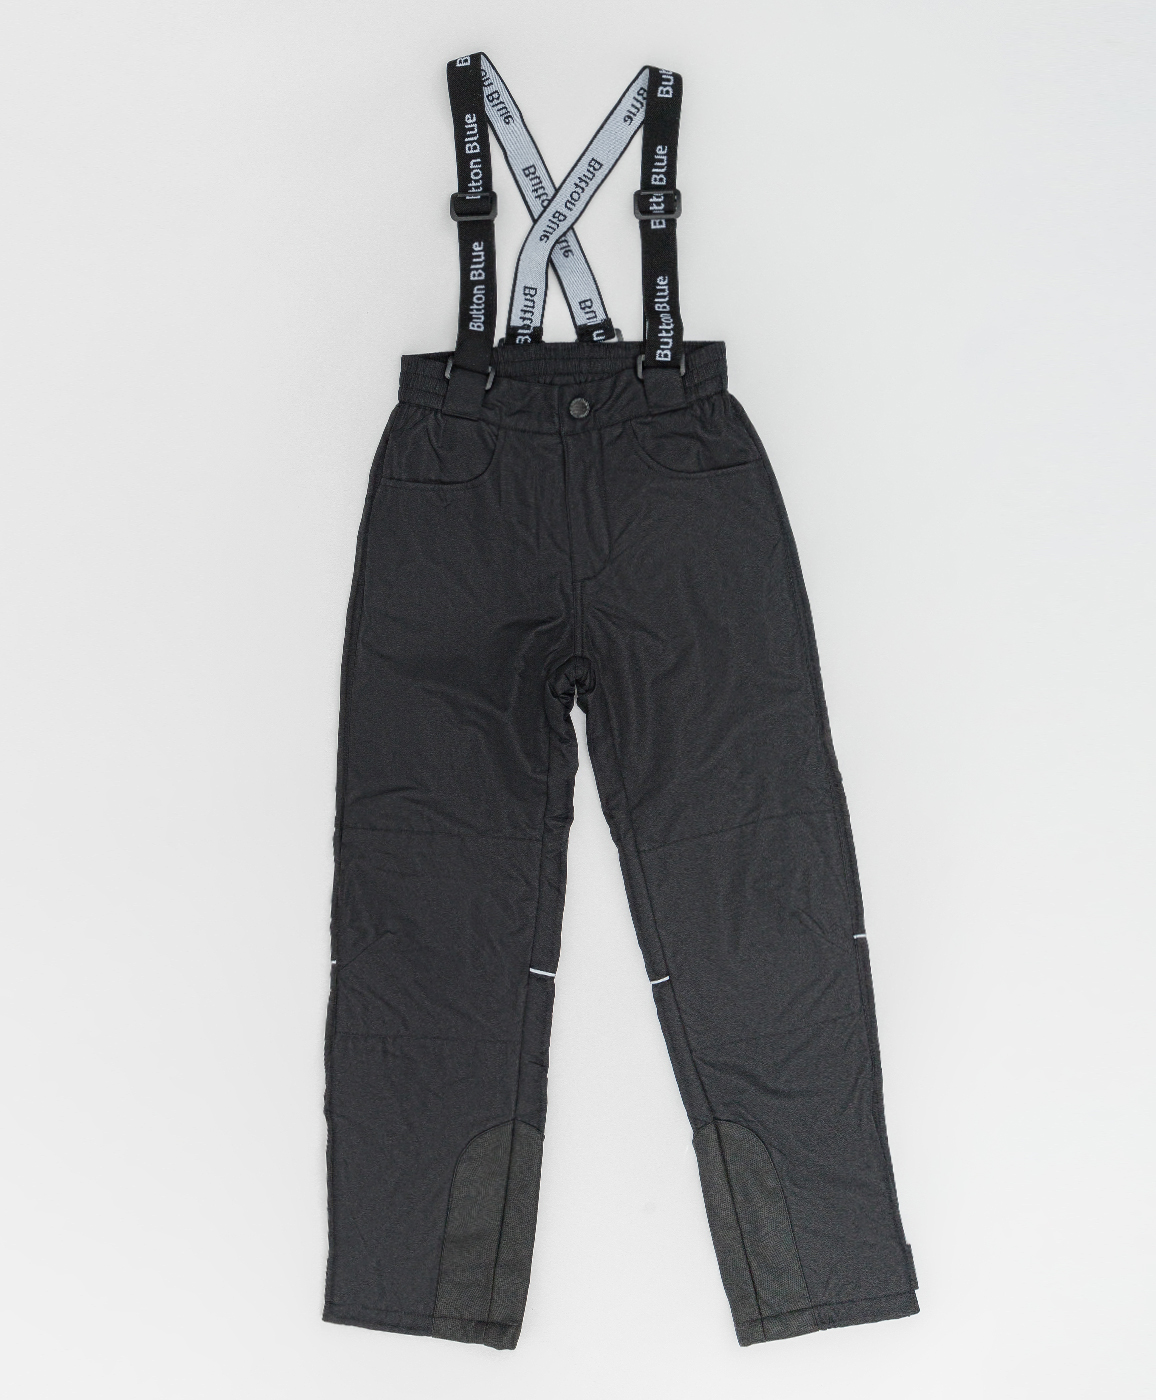 Демисезонные брюки Active Button Blue 220BBBA64010800, размер 98, цвет черный regular fit / прямые - фото 3